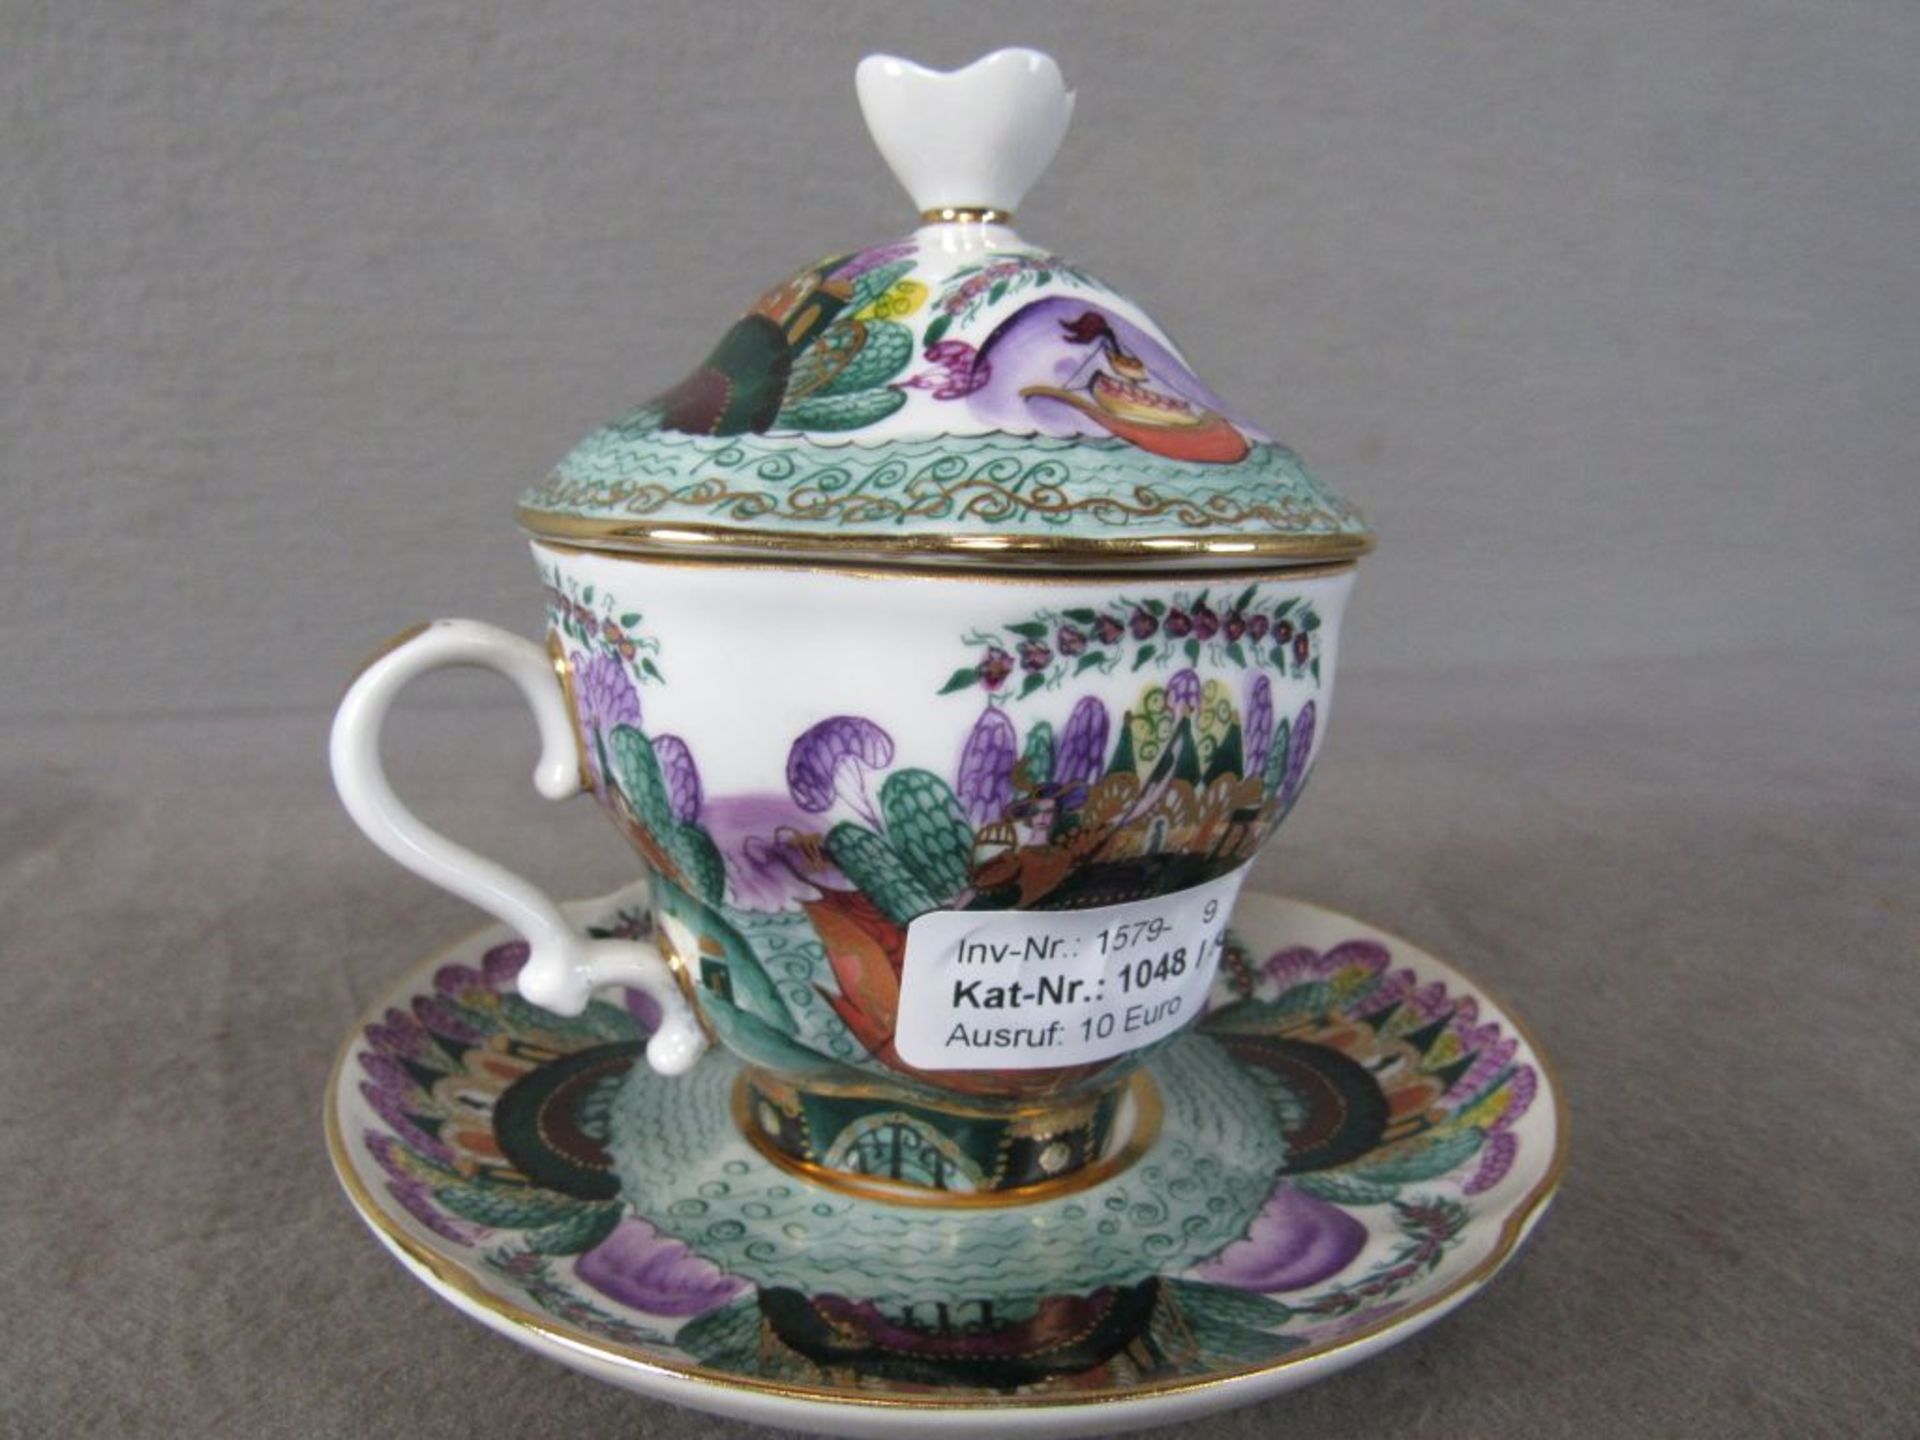 Teetasse Rußland handbemalt Gesamthöhe:13,5cm Durchmesser Teller:15cm - Bild 6 aus 6